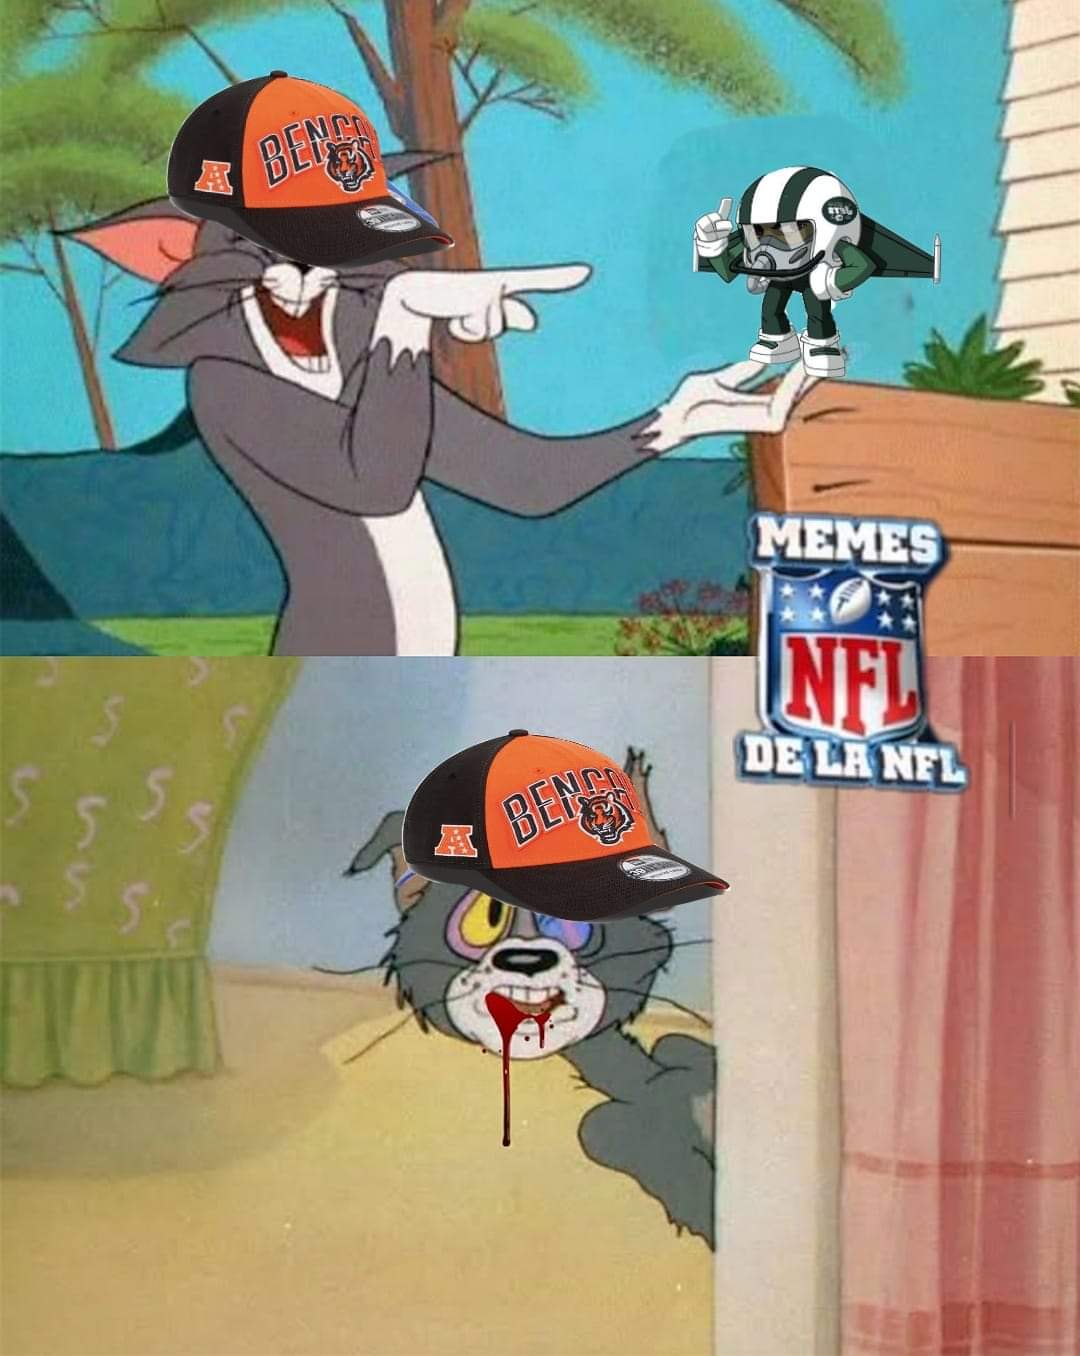 Meme de la semana 8 de la NFL